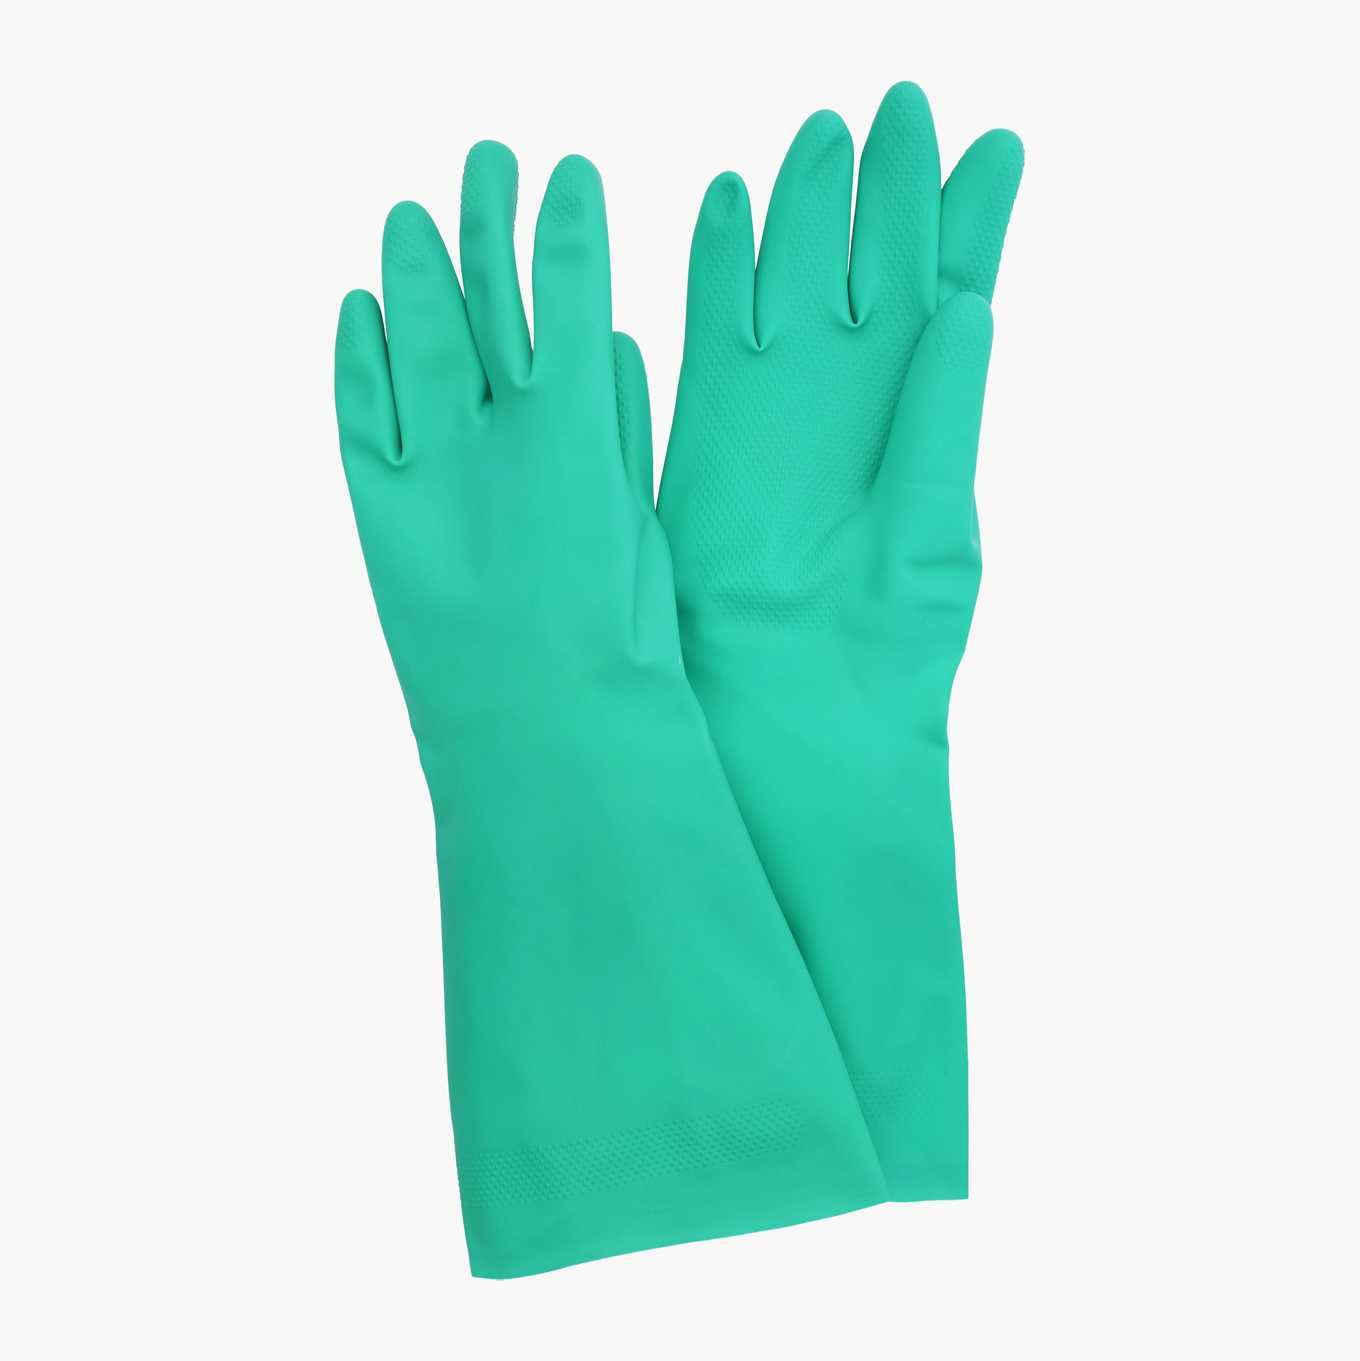 Safety glove, Gesture